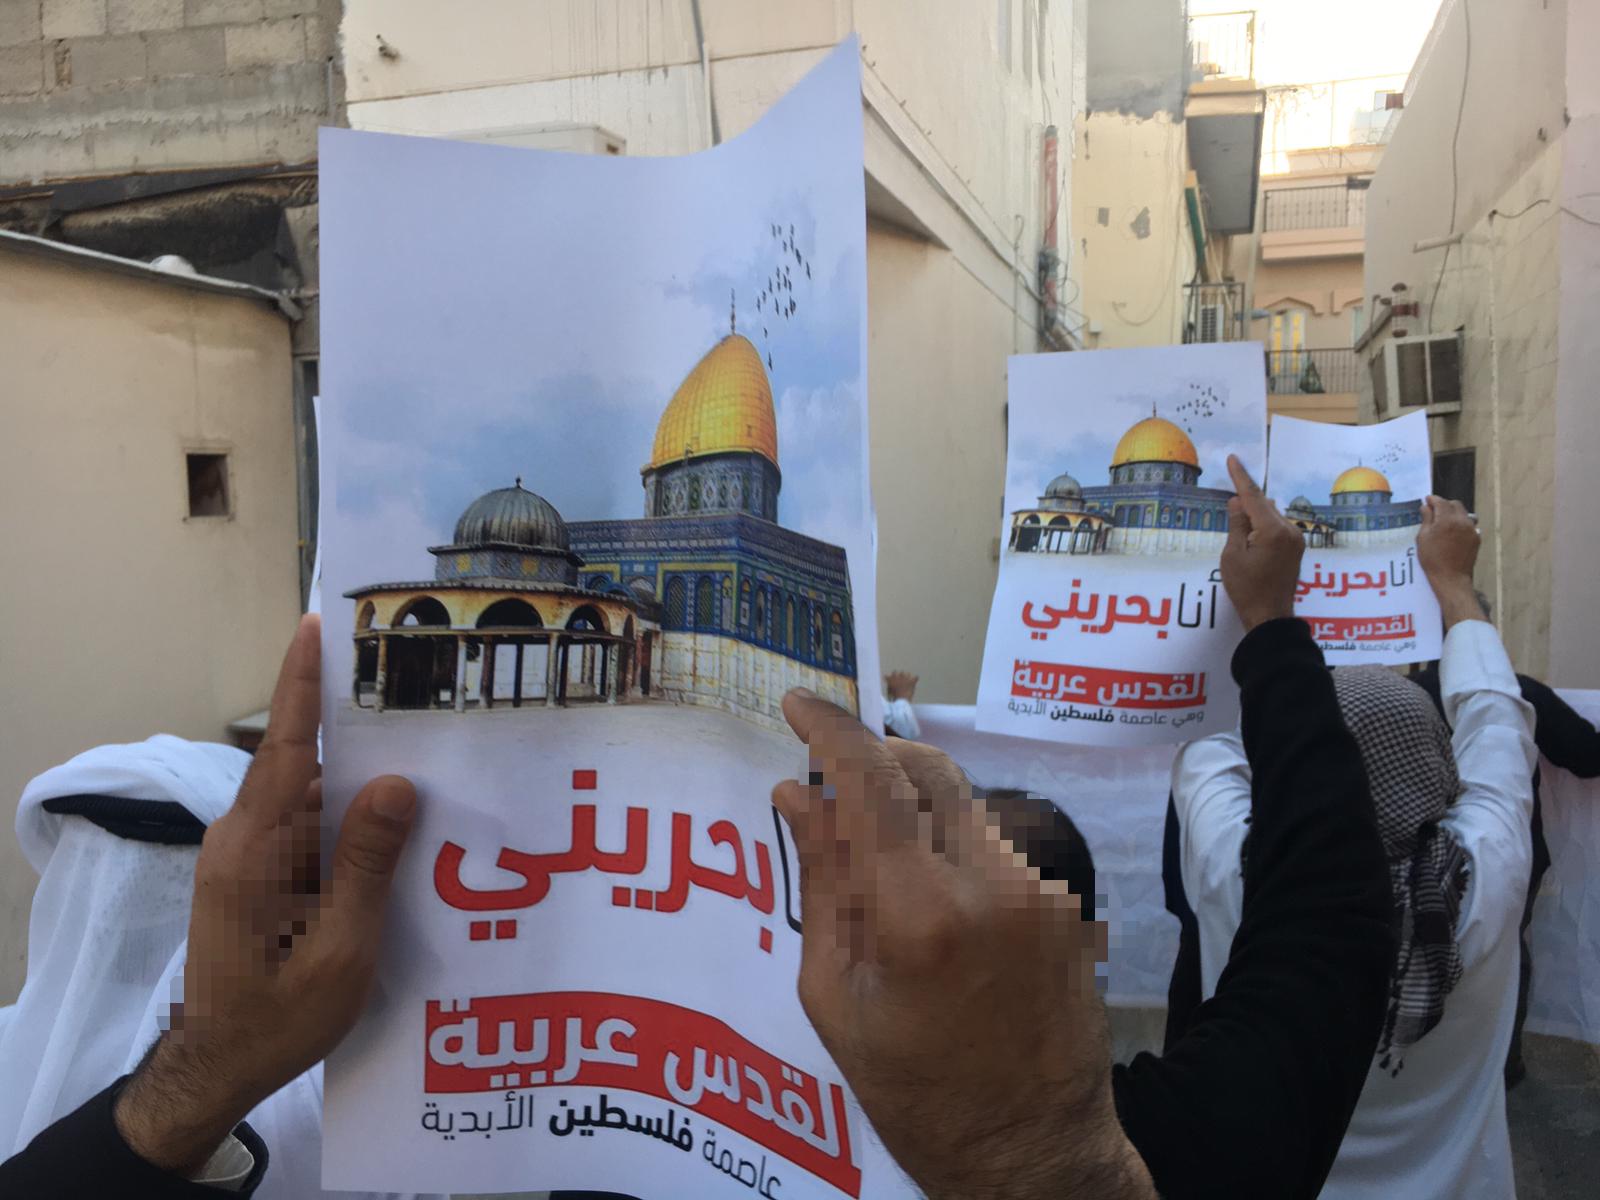 البحرينيون  يرفضون  "صفقة القرن" و يطالبون بلقدس عاصمة فلسطين